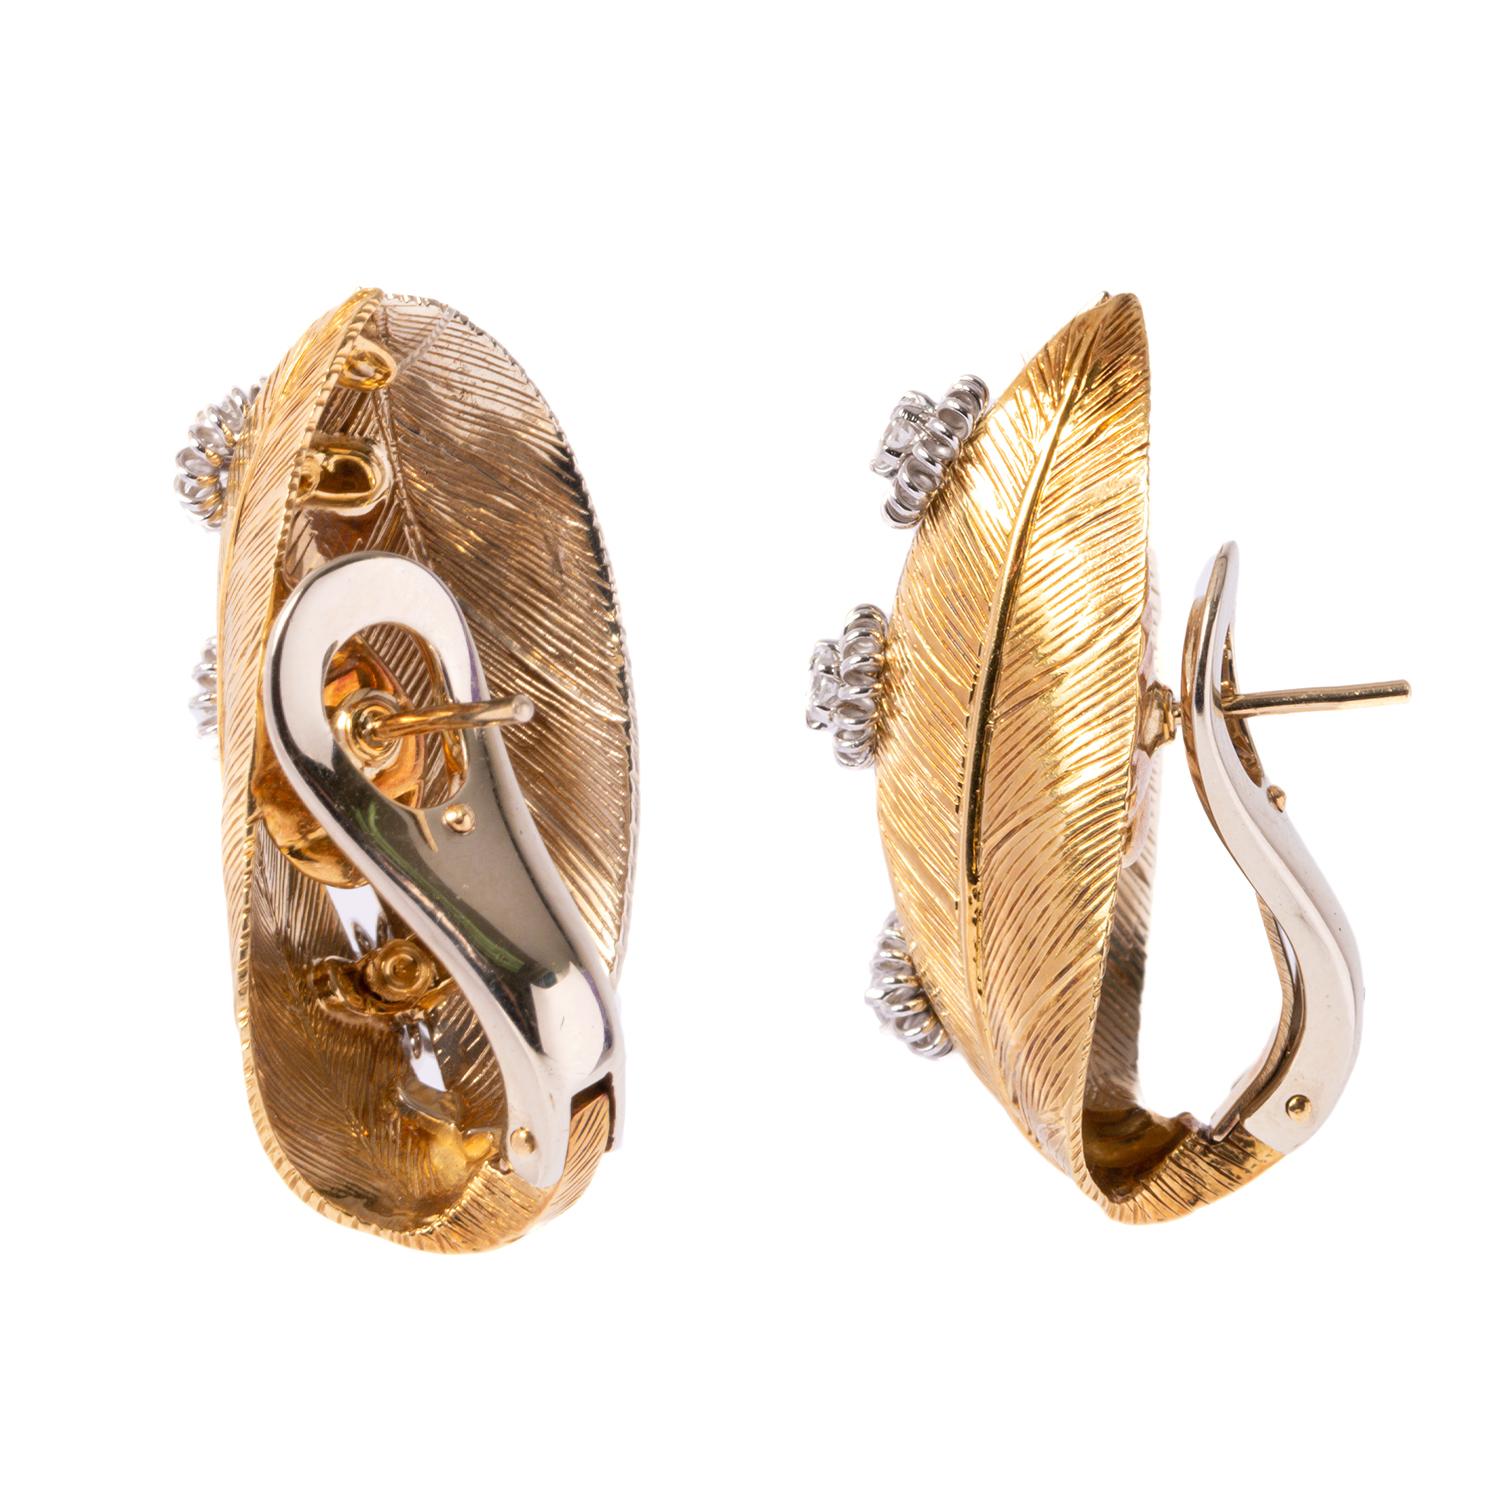 Schöne Ohrringe des italienischen Designers Giancarlo Montebello. Die Ohrringe wurden direkt für unsere Enrico Trizio 1868 Schmuckstücke entworfen. Ein sehr elegantes Paar Ohrringe aus Gelbgold mit Blattdesign und Diamant, 0,45 Karat Weißdiamanten.